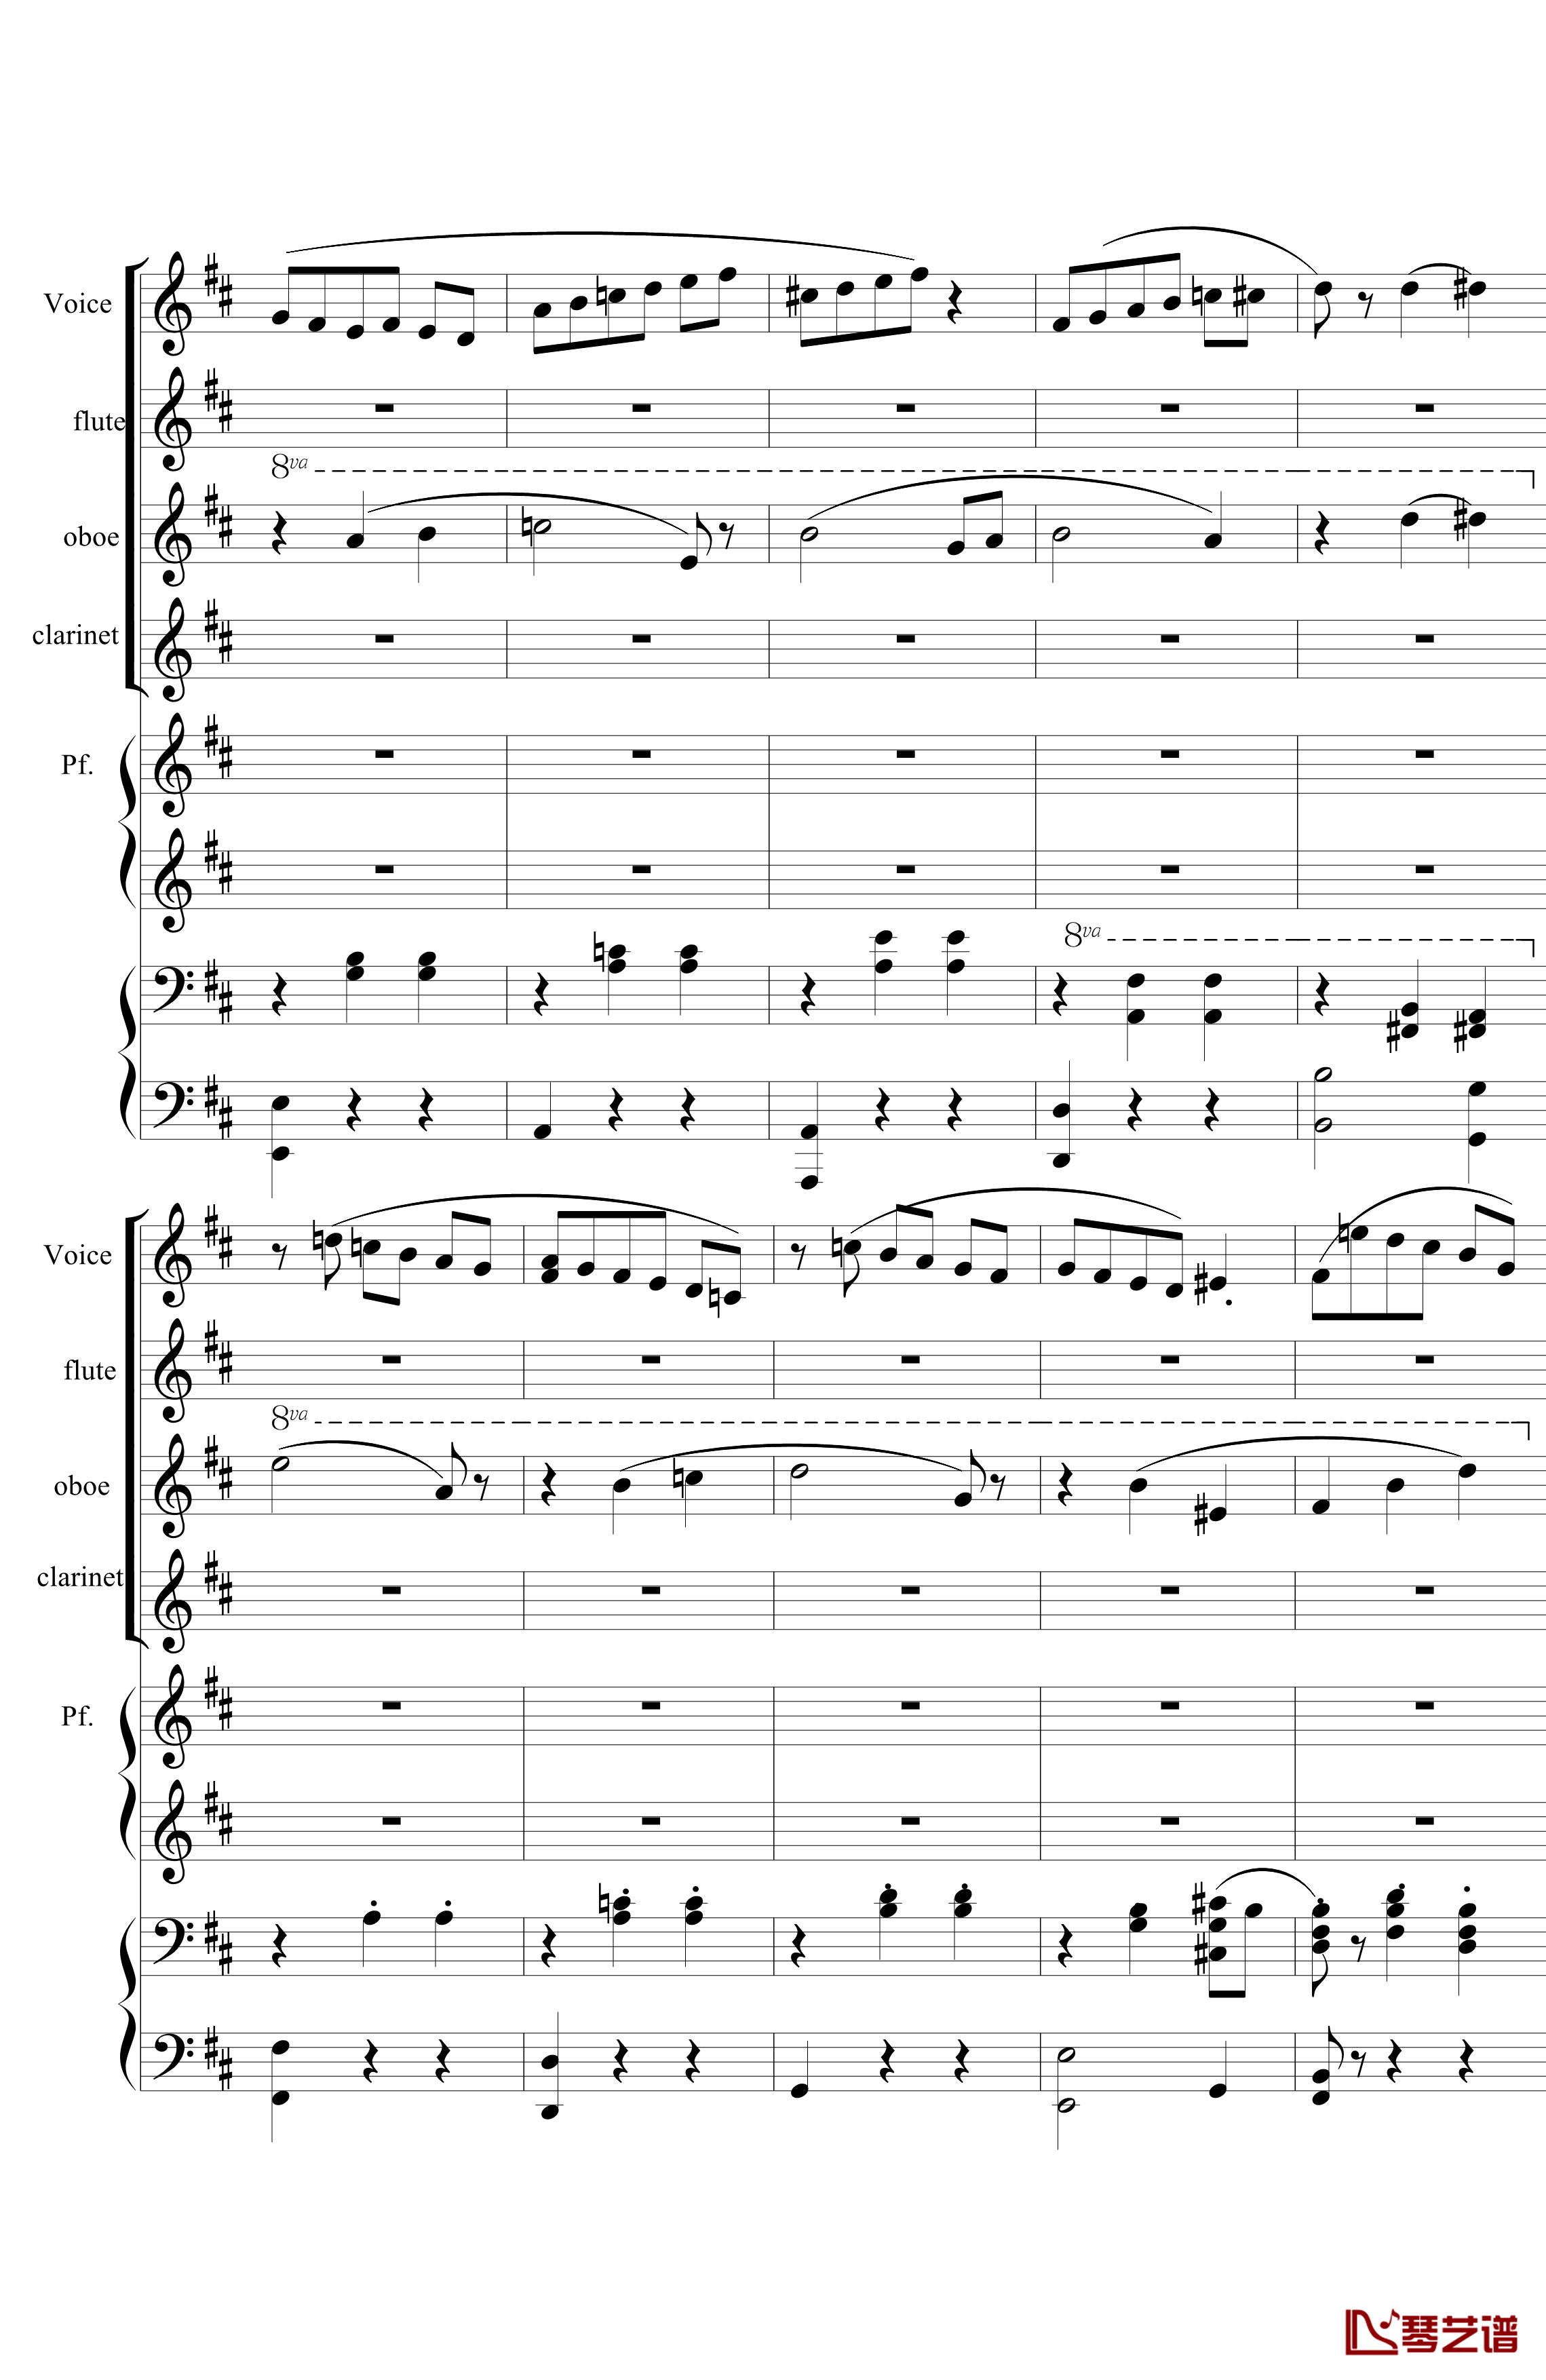 花之圆舞曲钢琴谱-室内乐-柴科夫斯基-Peter Ilyich Tchaikovsky11